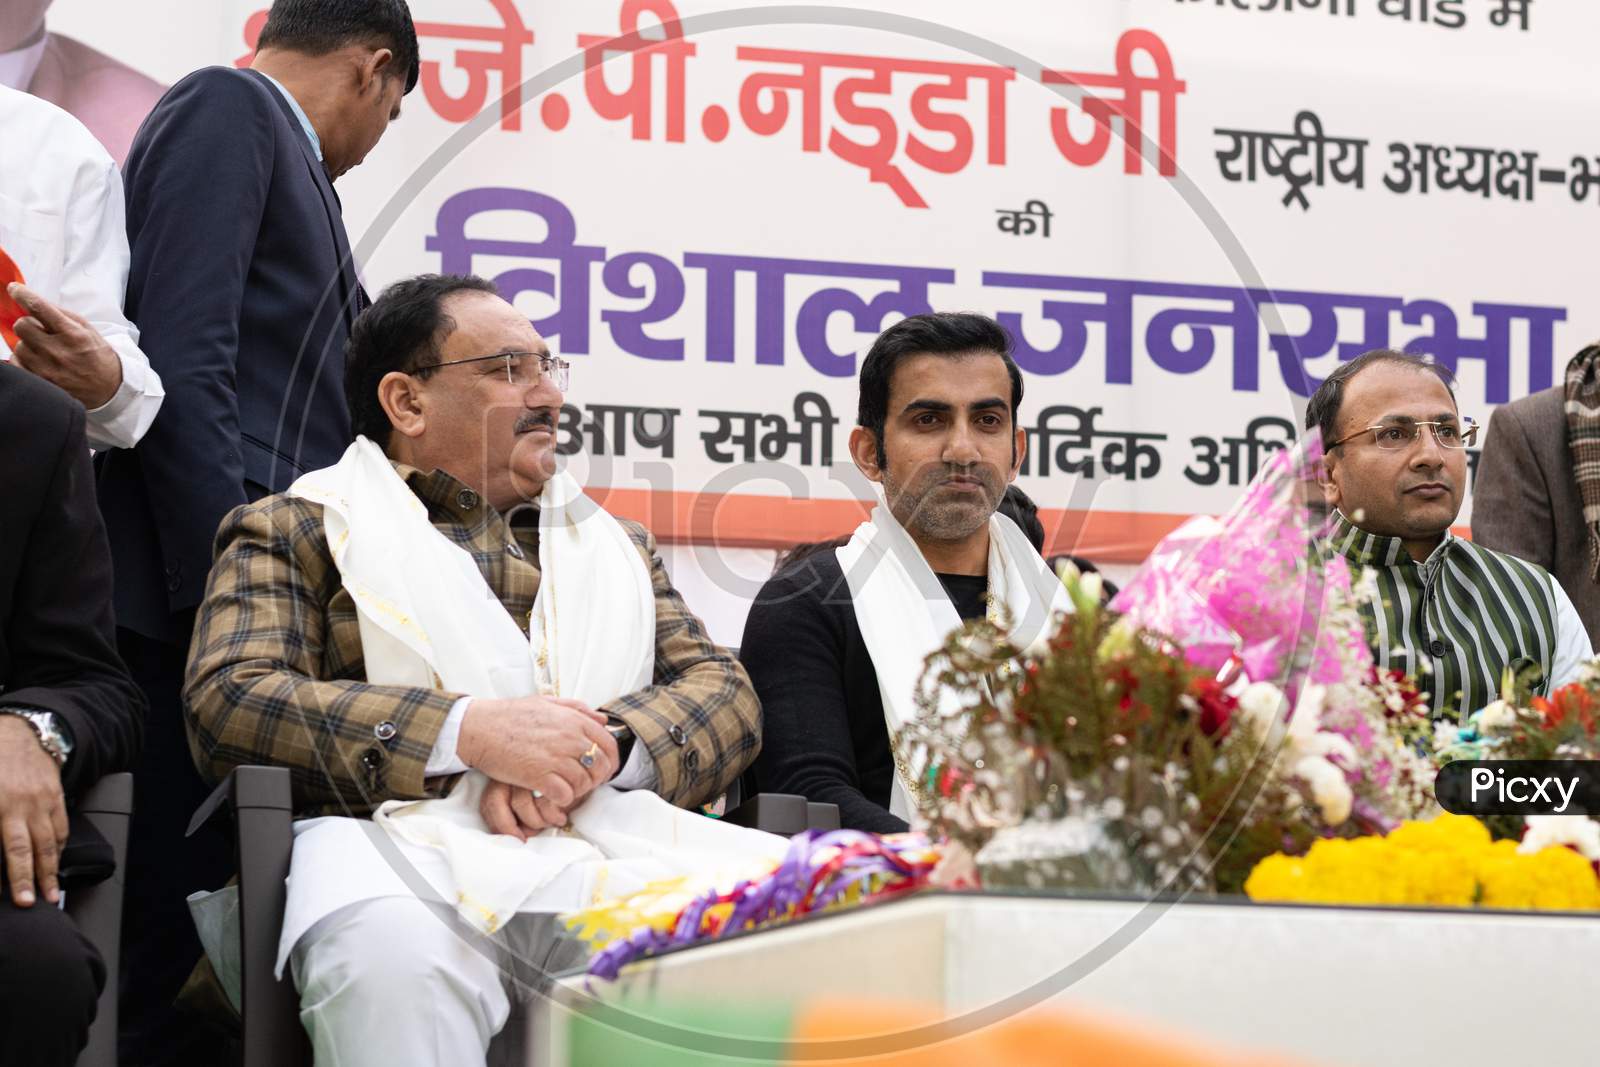 Jagat Prakash Nadda, National President of Bharatiya Janata Party BJP and Member of Parliament Rajya Sabha, and Gautam Gambhir, Former Cricketer and Member of Honourable Parliament, campaigning for Delhi Assembly Election 2020